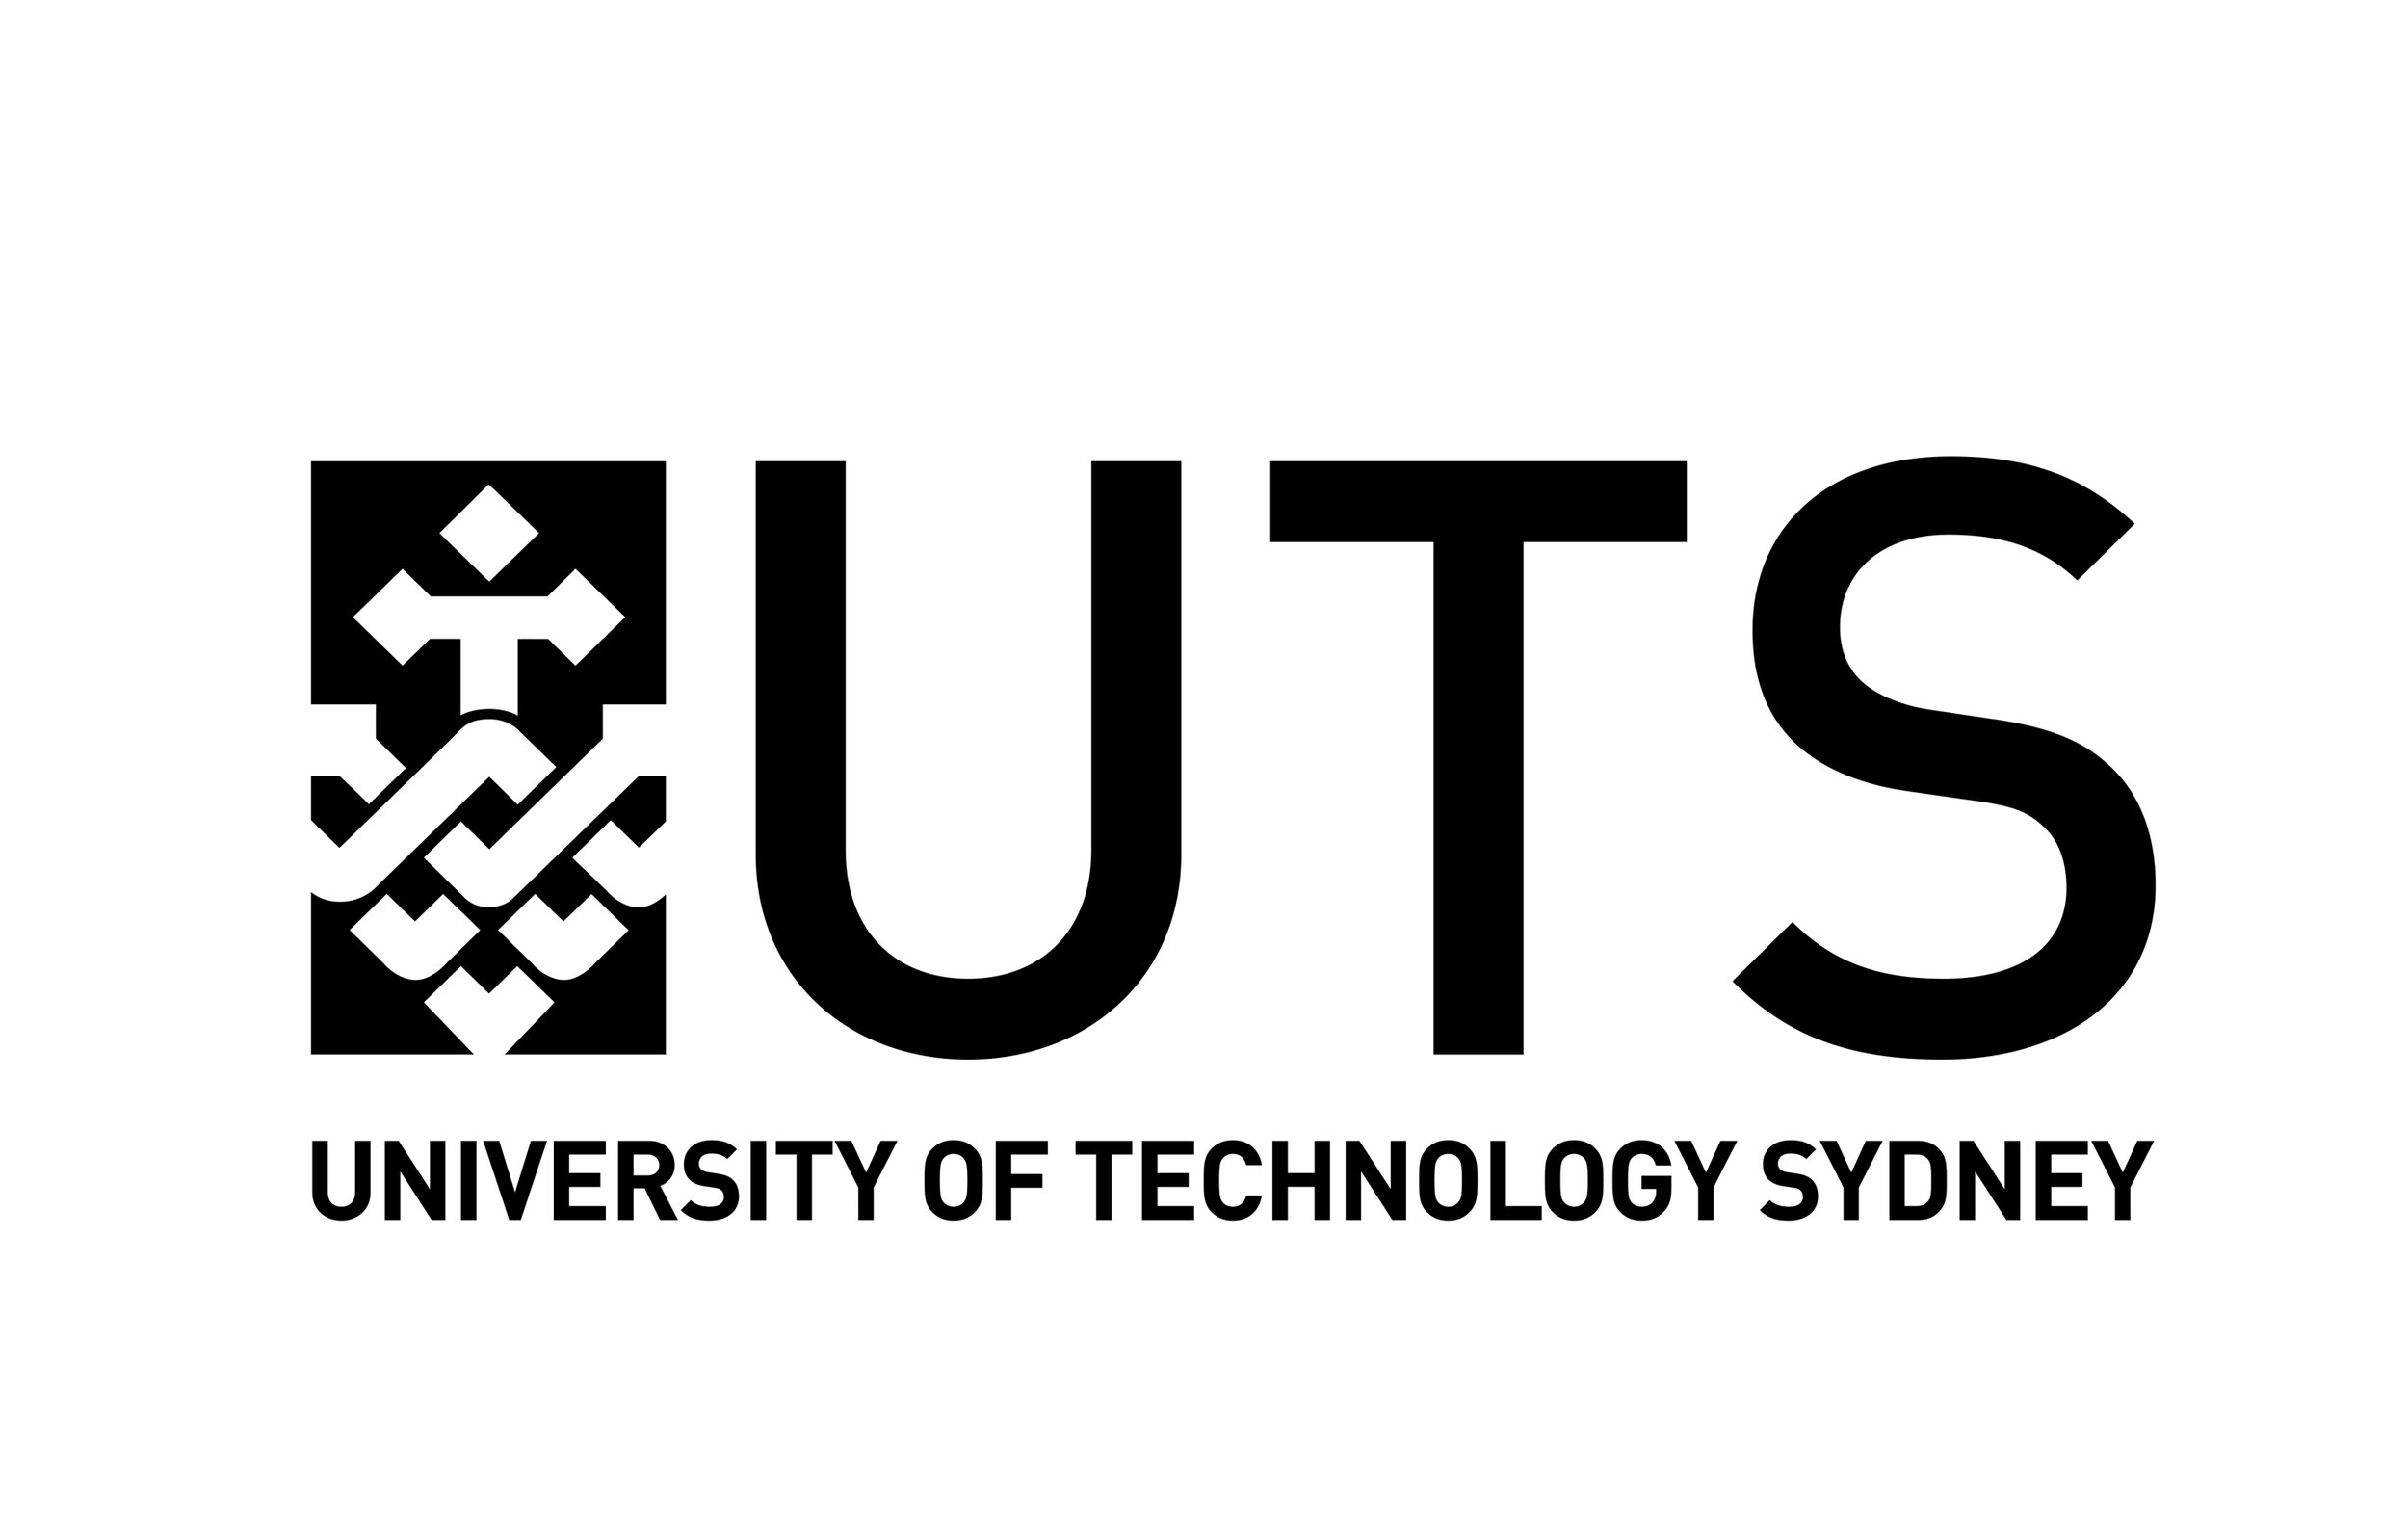 Black-UTS-logo-Title-HI-RES.jpg